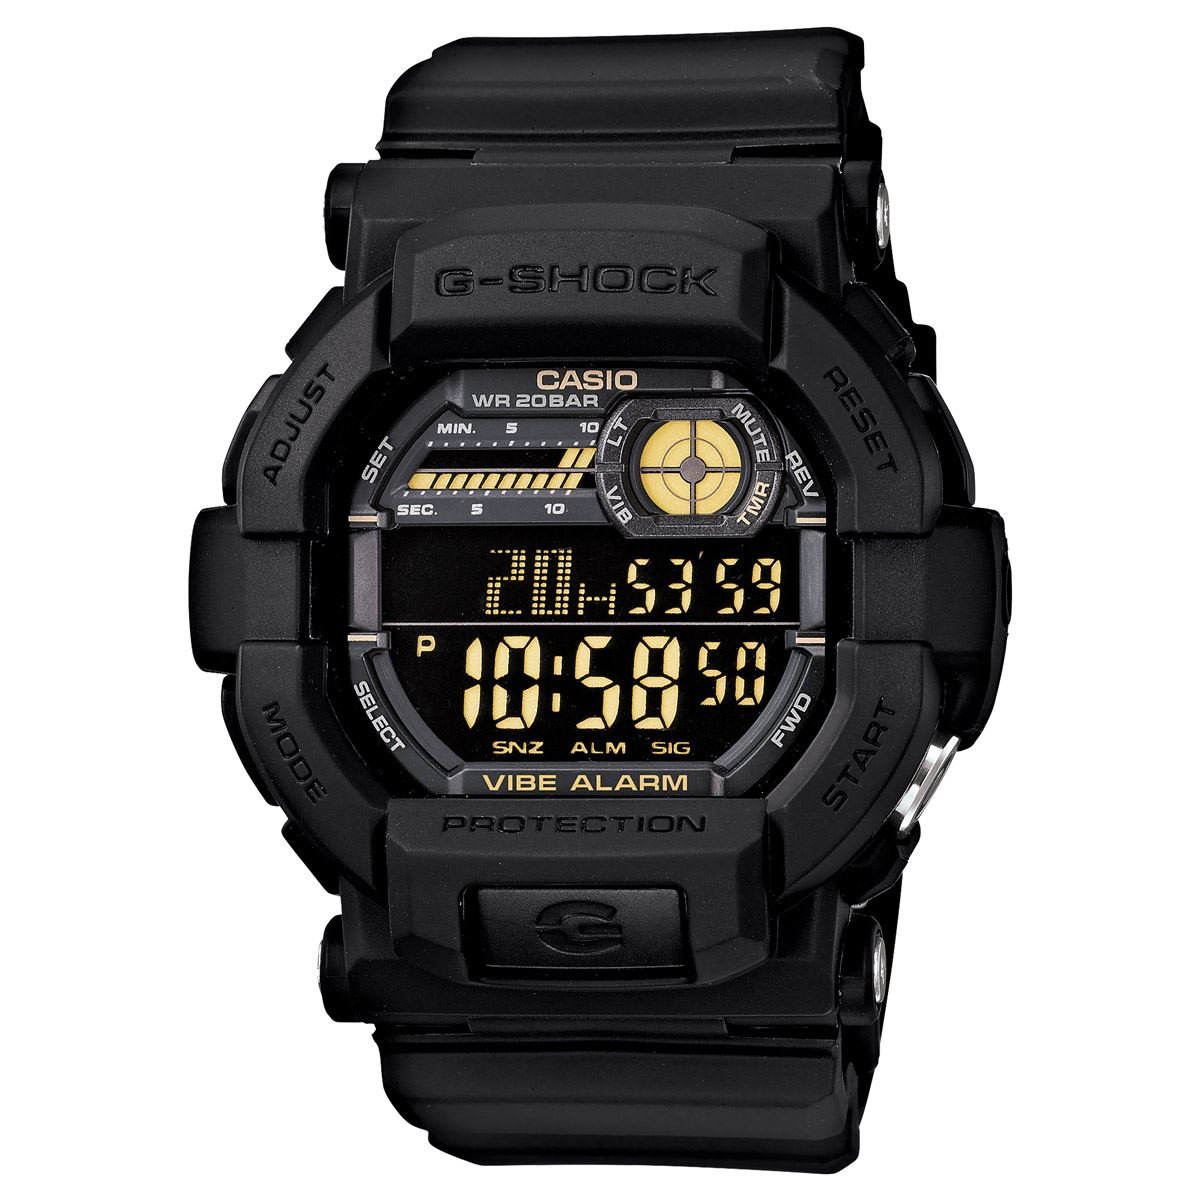 Reloj Casio Mod. GD-350-1BCR Para Caballero